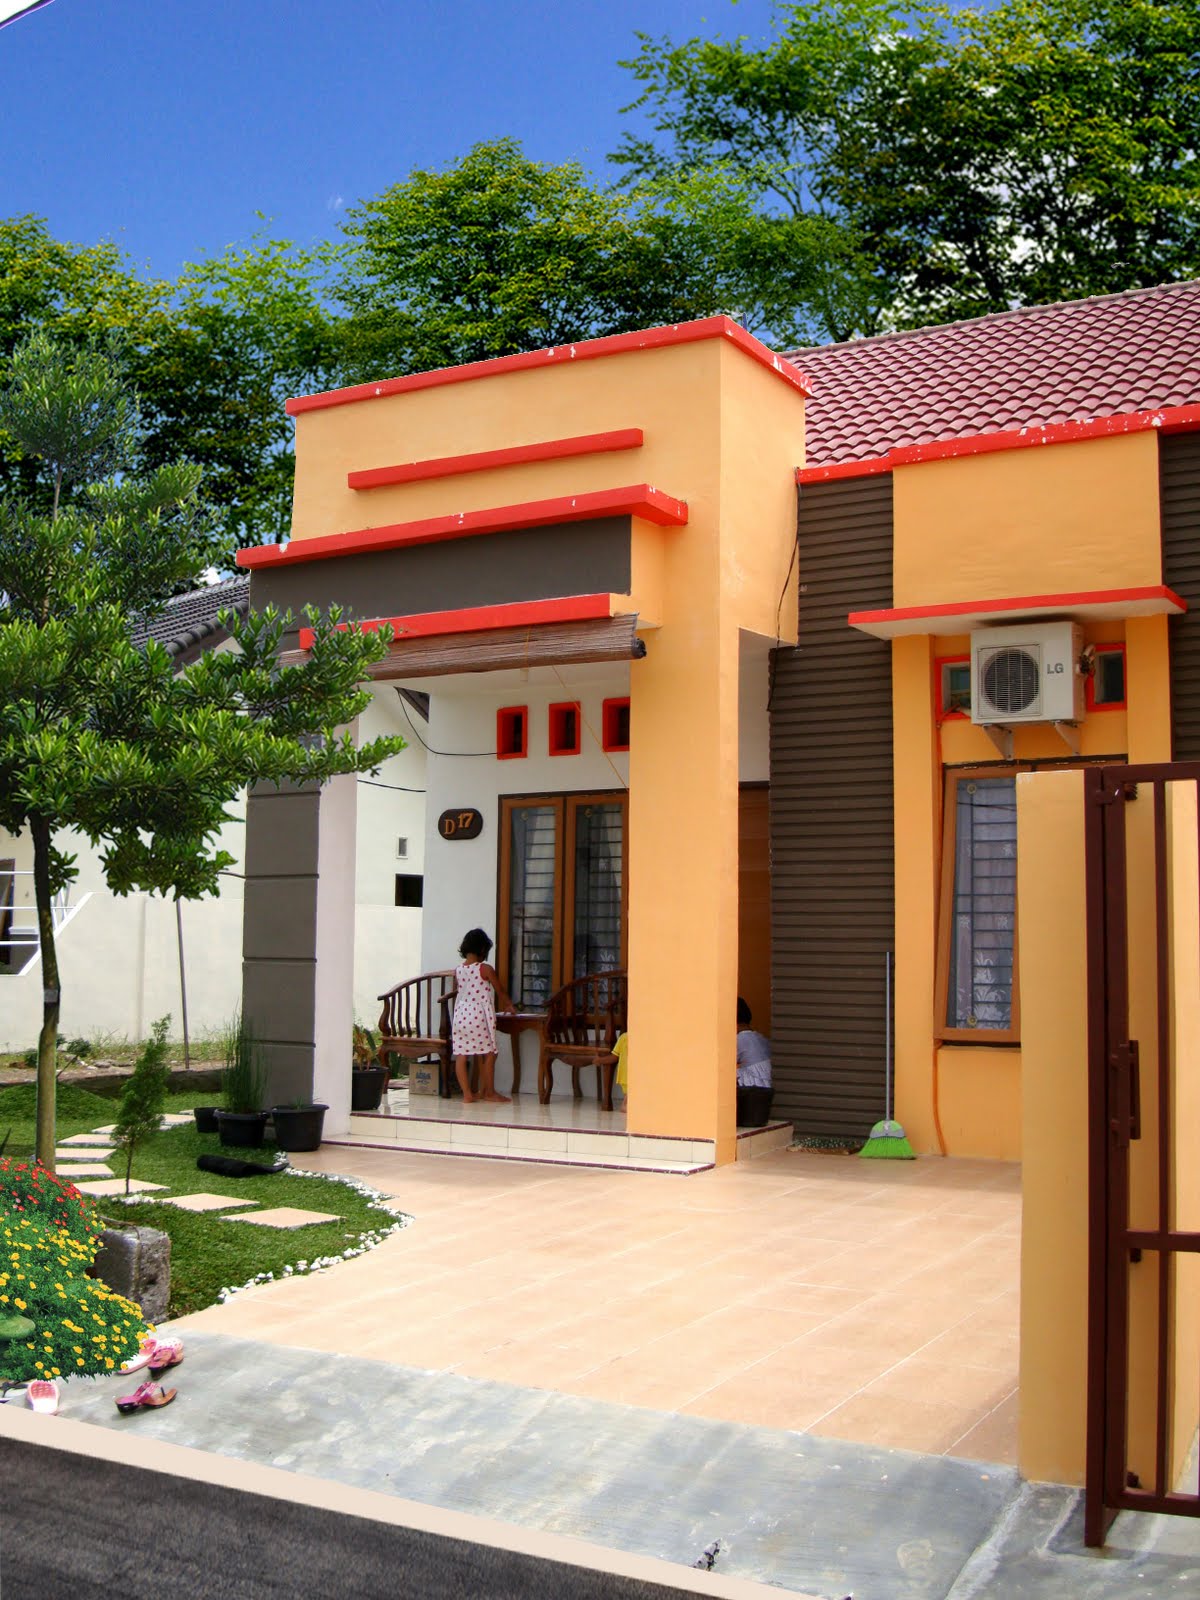 Mewah Desain Rumah Minimalis Warna Orange 20 Dalam Ide Pengaturan Dekorasi Rumah oleh Desain Rumah Minimalis Warna Orange